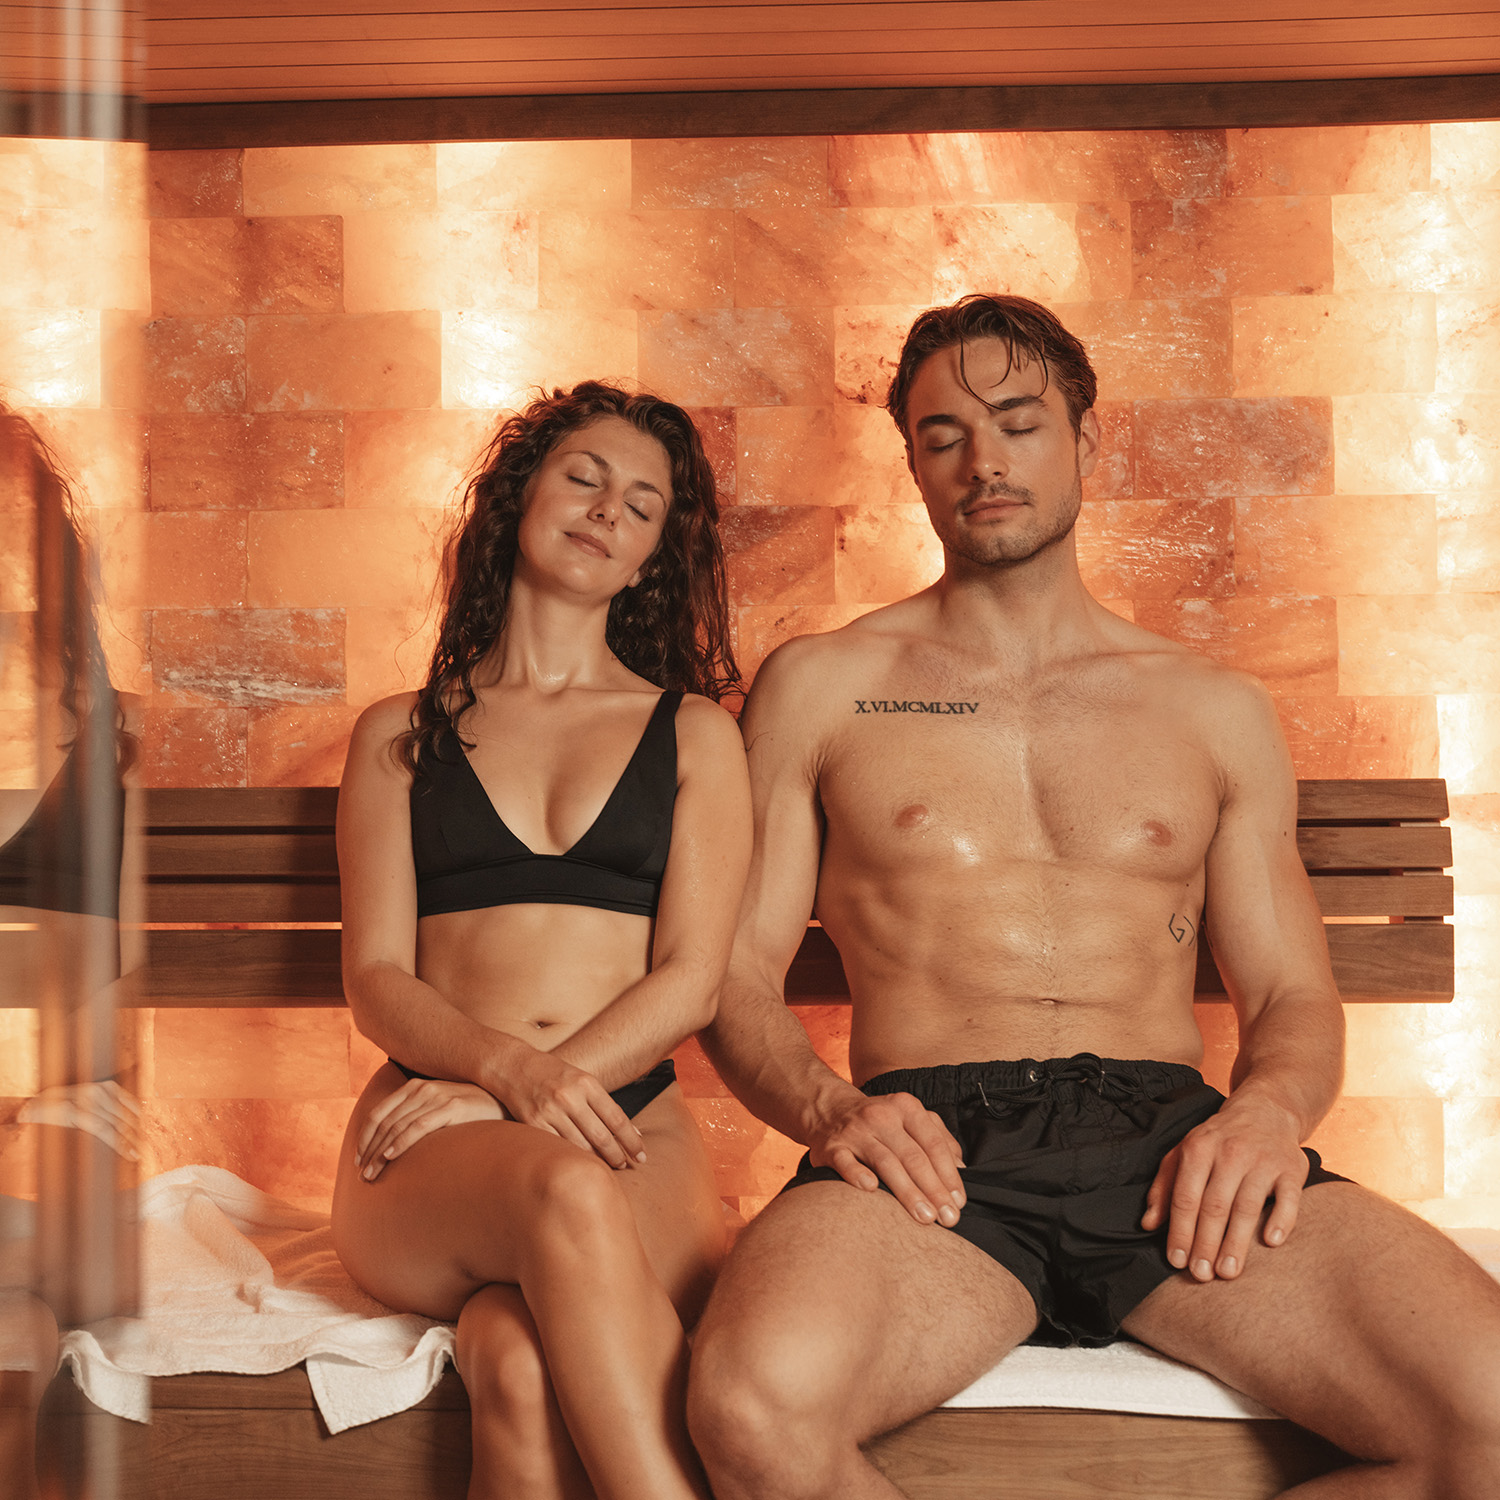 Zwei Personen, Weiblich und männlich entspannen in einer Sauna